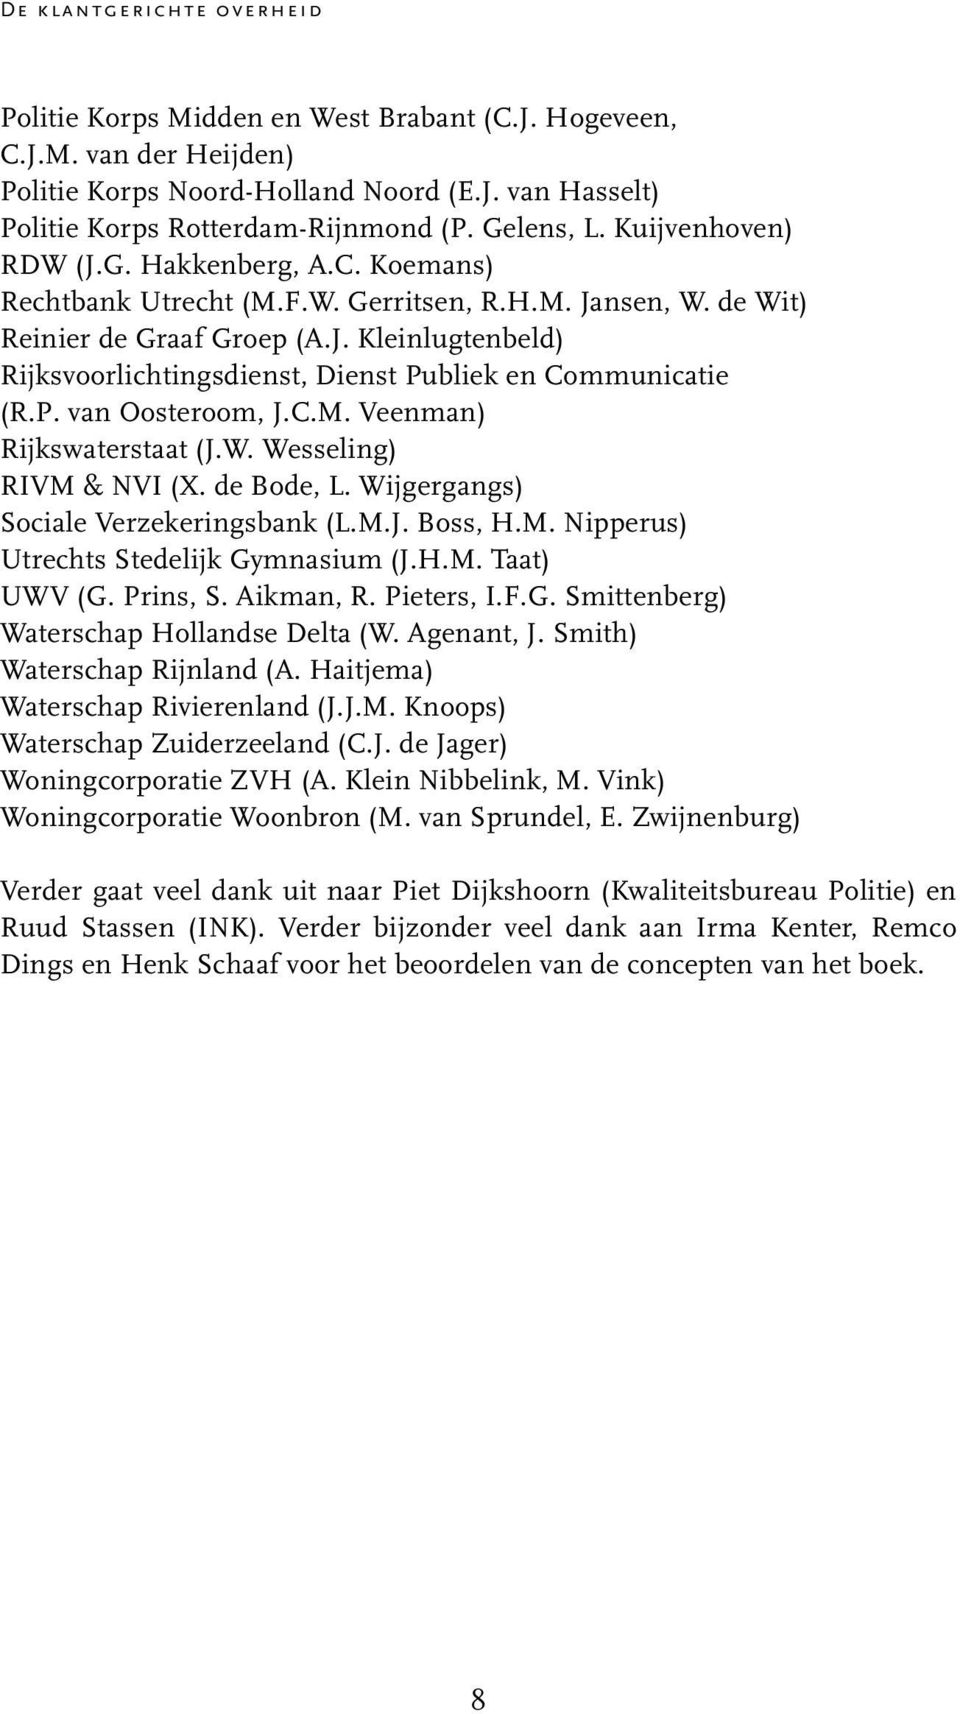 P. van Oosteroom, J.C.M. Veenman) Rijkswaterstaat (J.W. Wesseling) RIVM & NVI (X. de Bode, L. Wijgergangs) Sociale Verzekeringsbank (L.M.J. Boss, H.M. Nipperus) Utrechts Stedelijk Gymnasium (J.H.M. Taat) UWV (G.